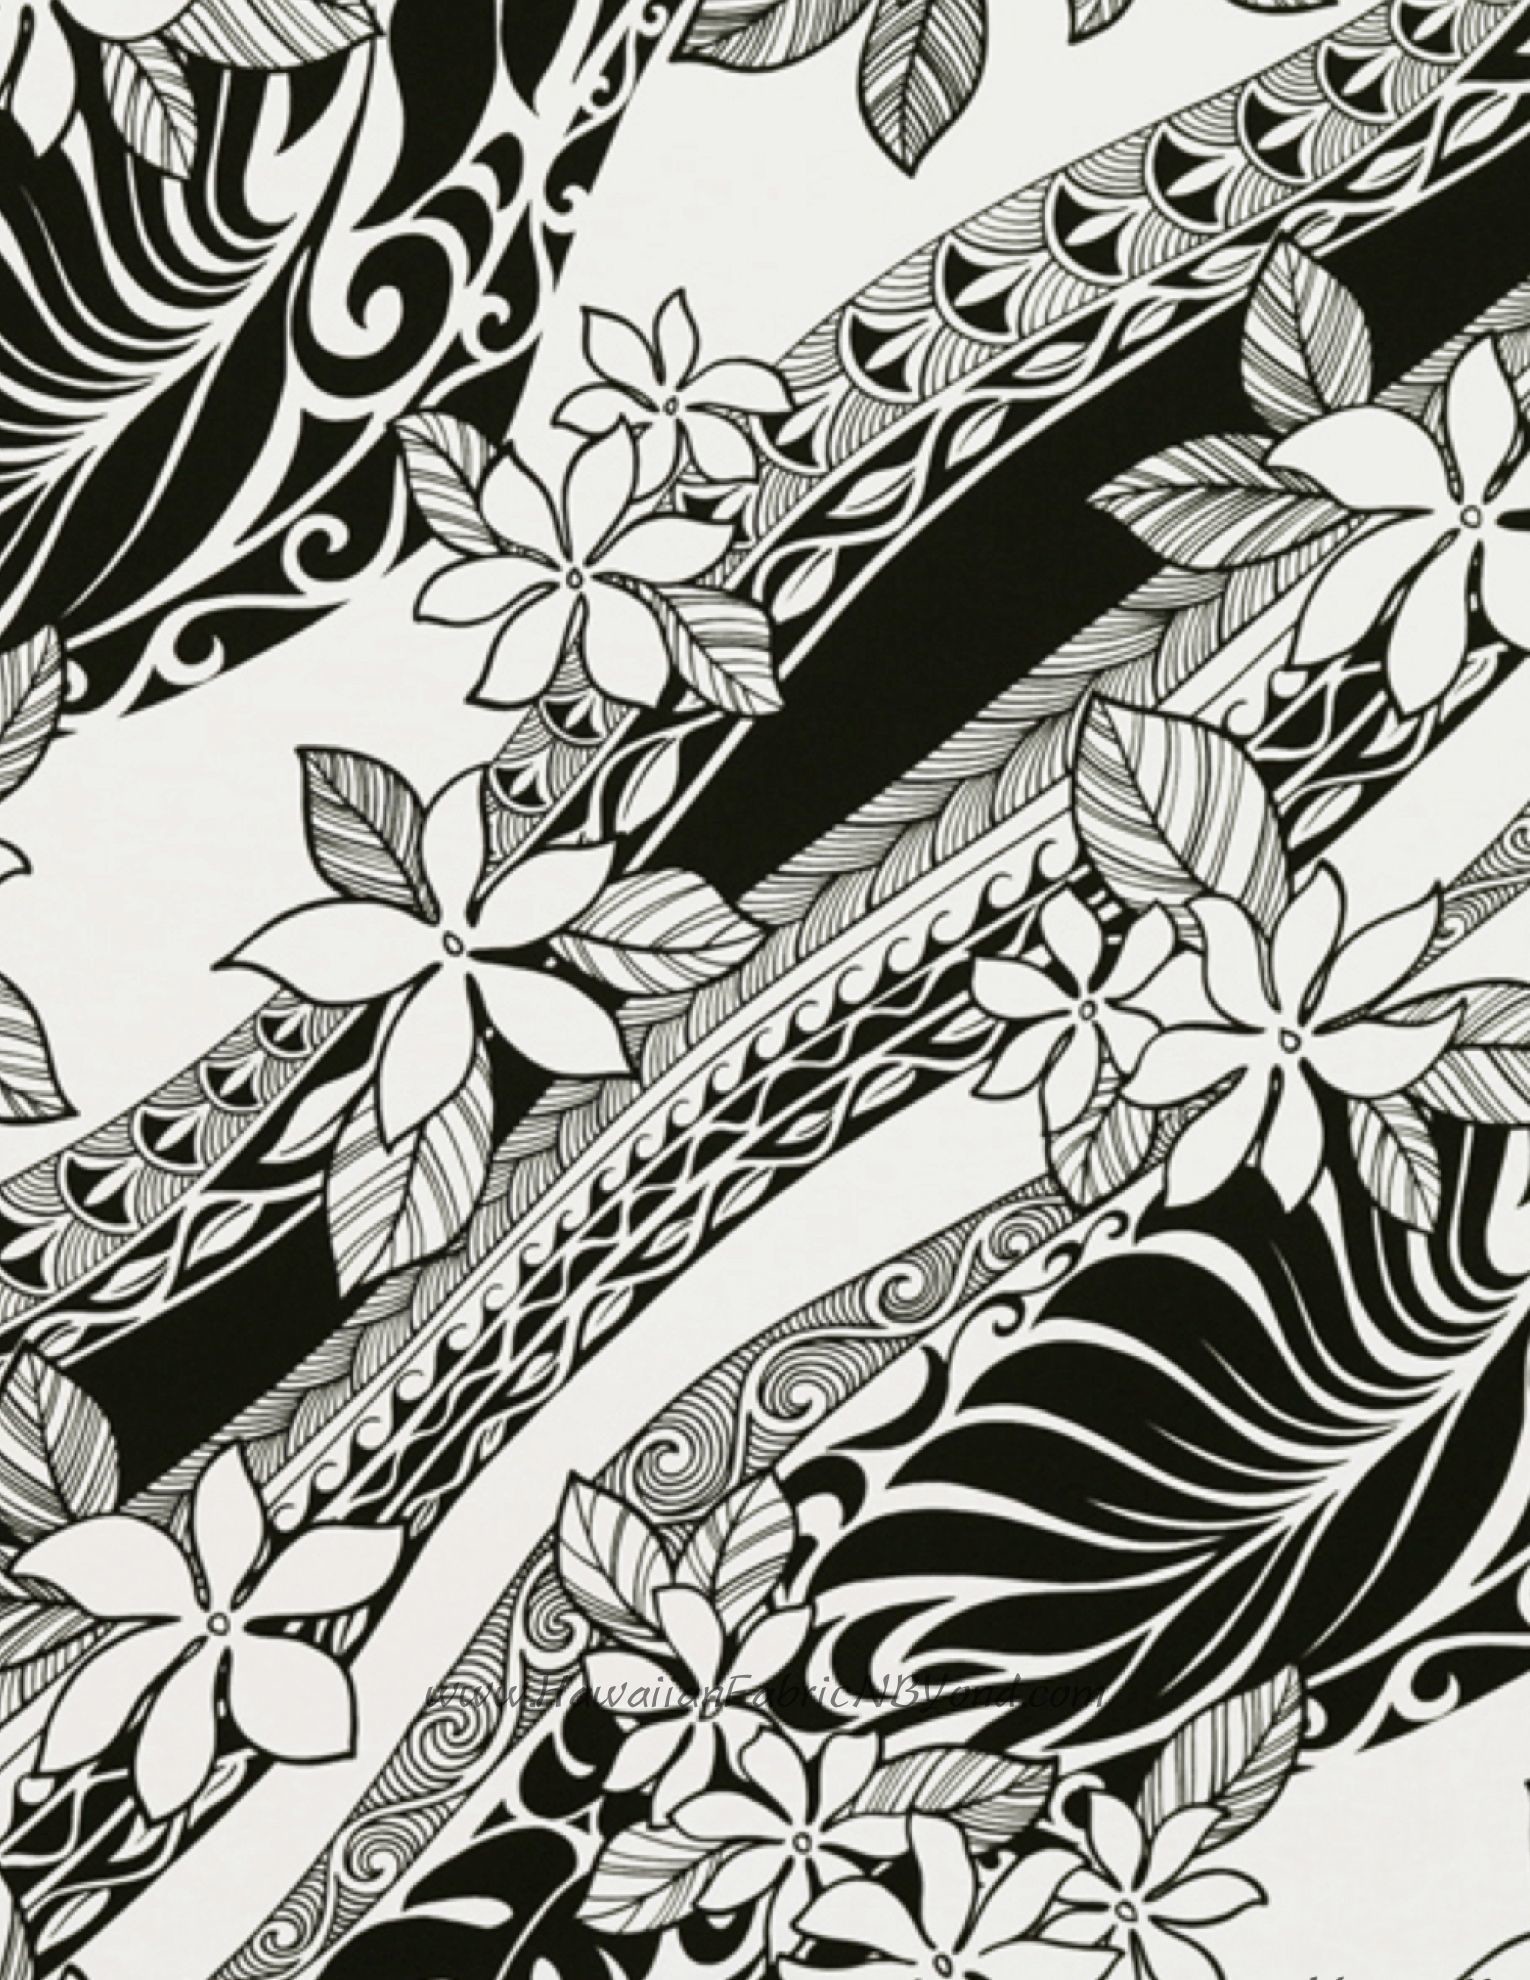 1530x1980 Polynesian floral fabric #monstera #polynesian #fabric #Hawaii #flowers  #etsyfashion #sewing #hawaiianfabricnbyond #tattoos #stoff #tissu